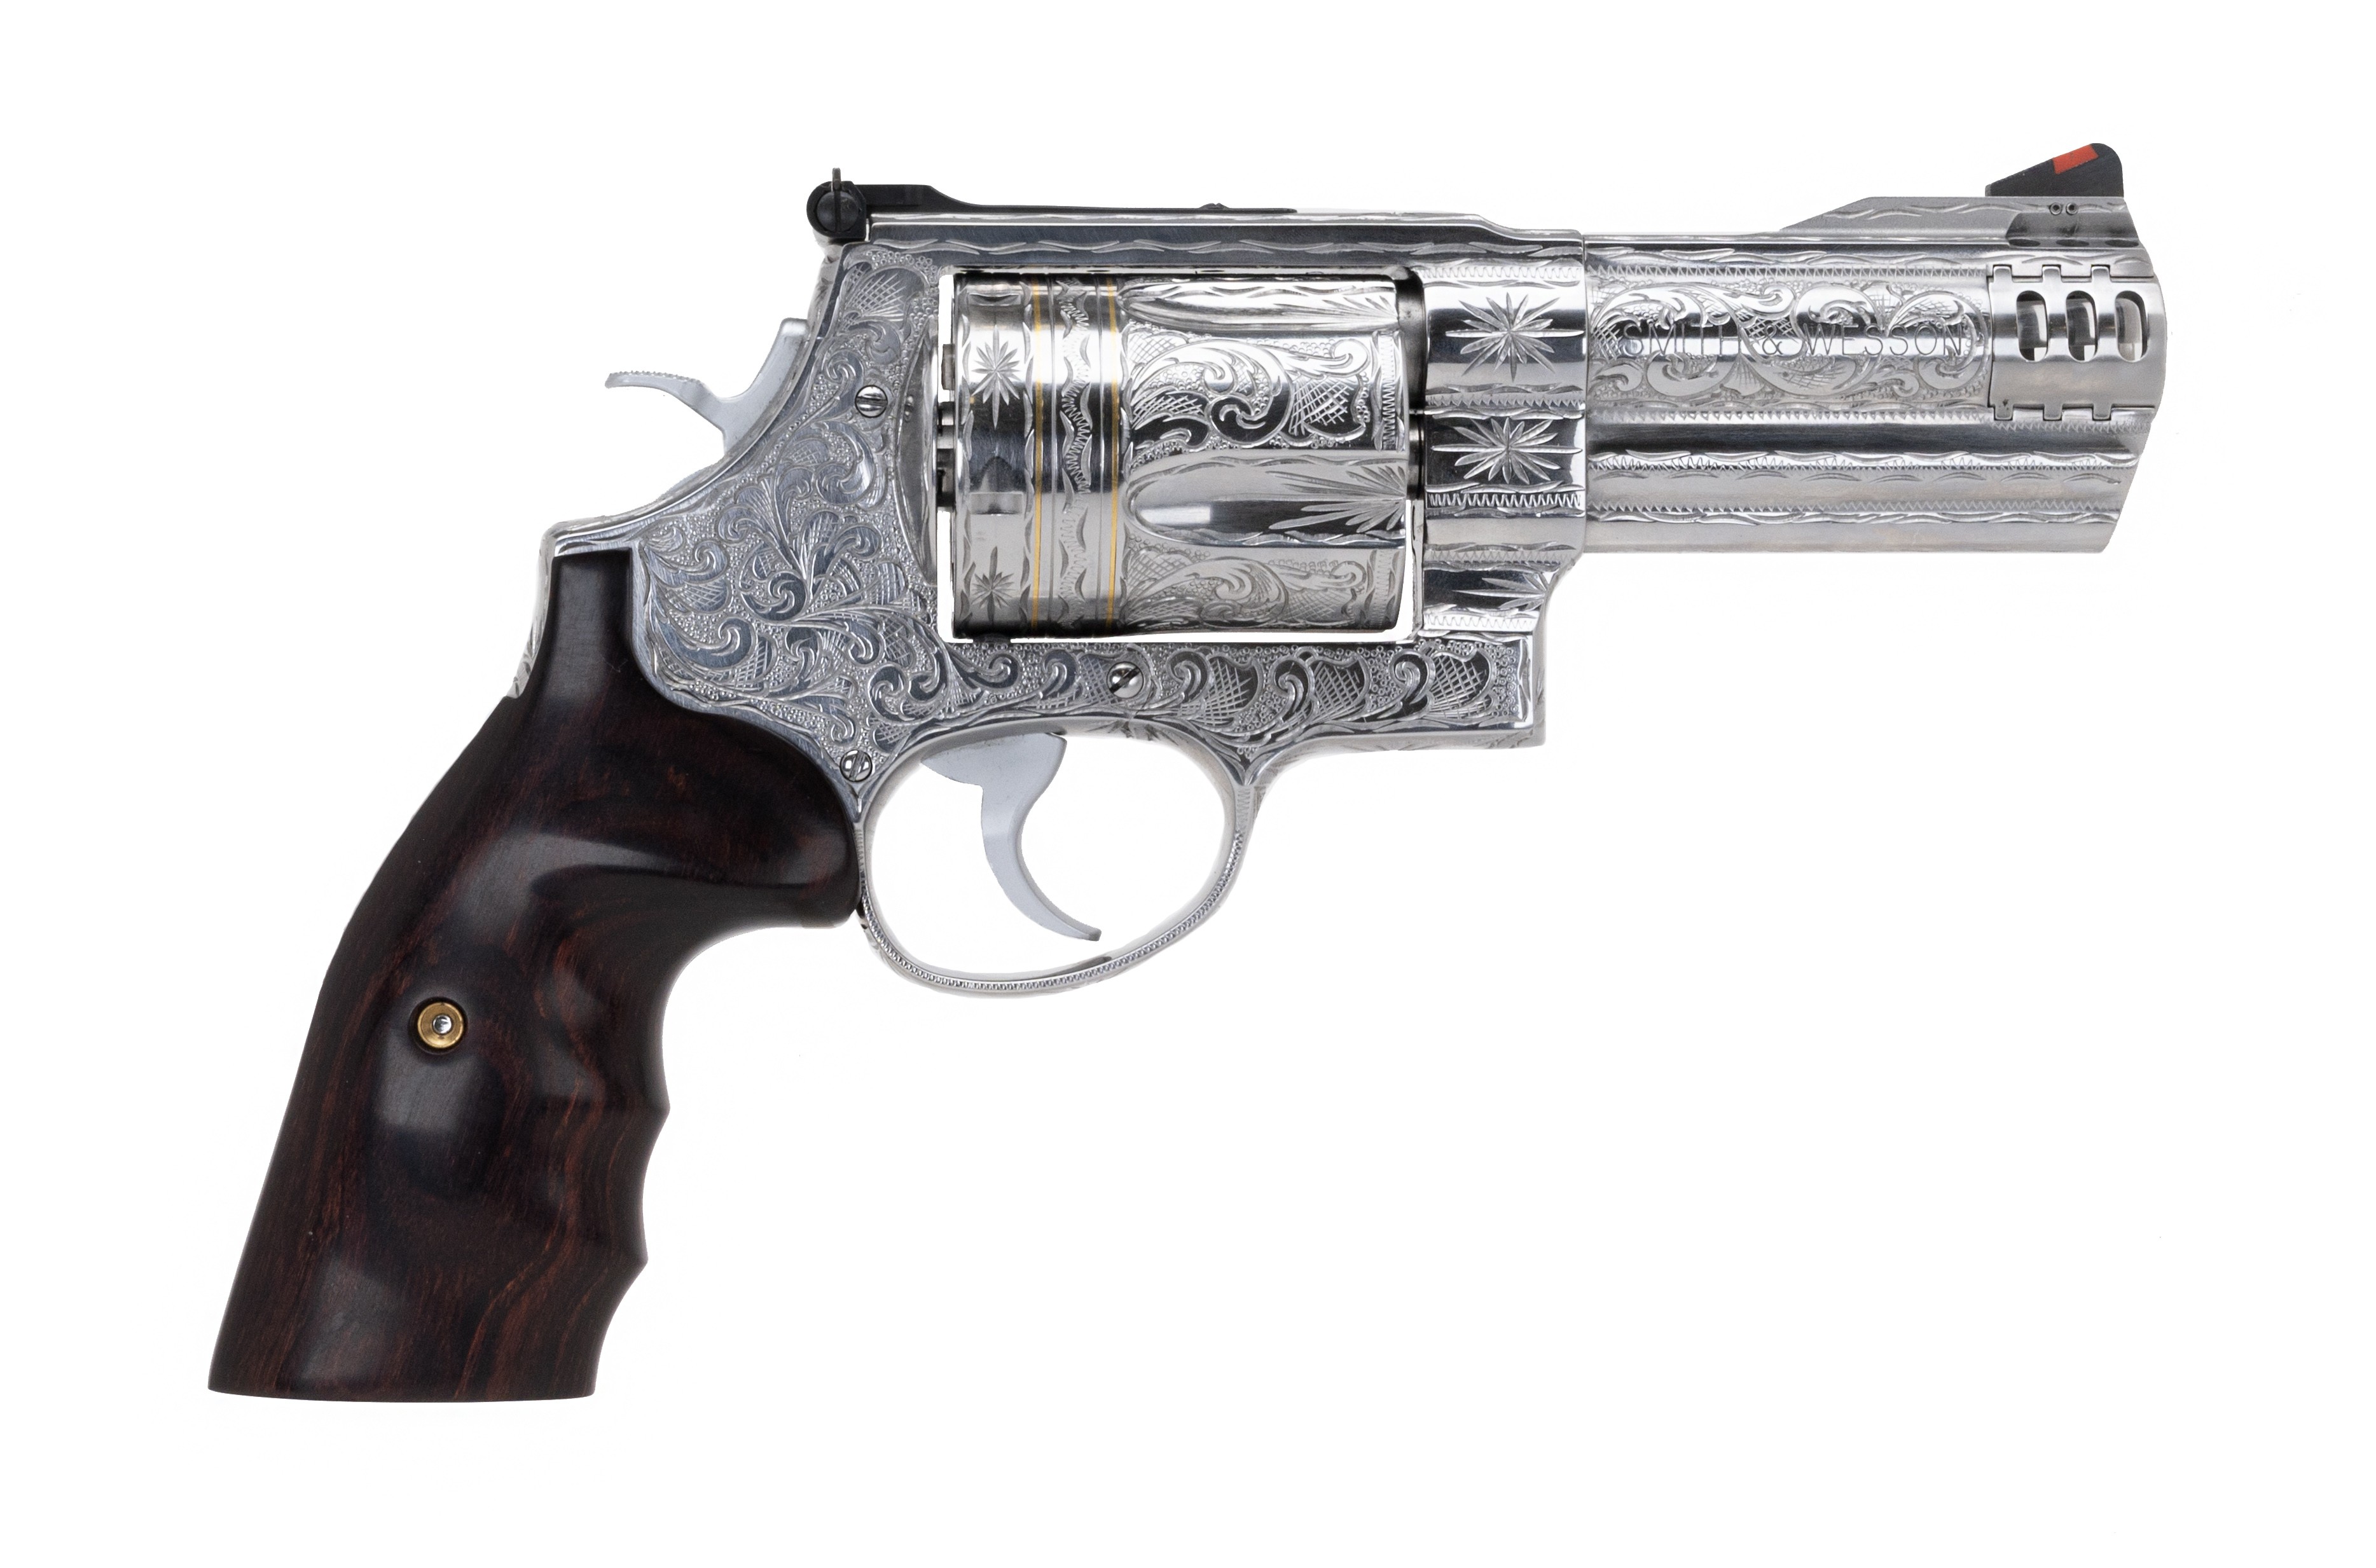 Magnum Smith Wesson Revolver Homemade Weapons Custom Guns | Sexiz Pix